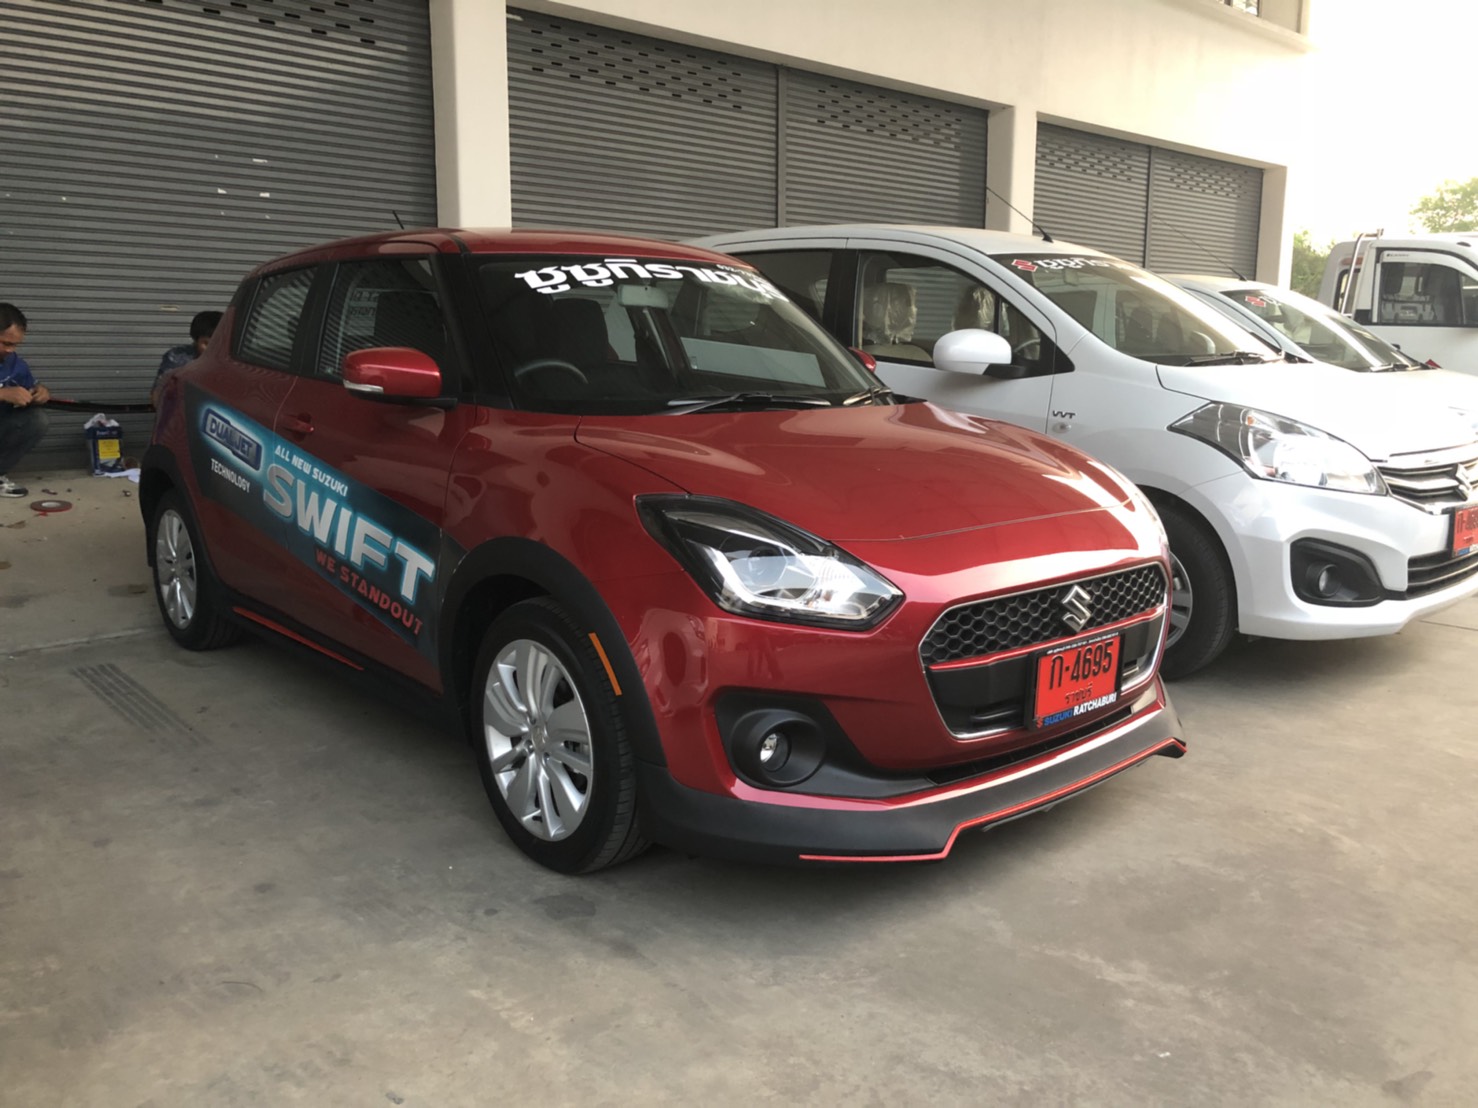 Suzuki swift 2018สีแดง